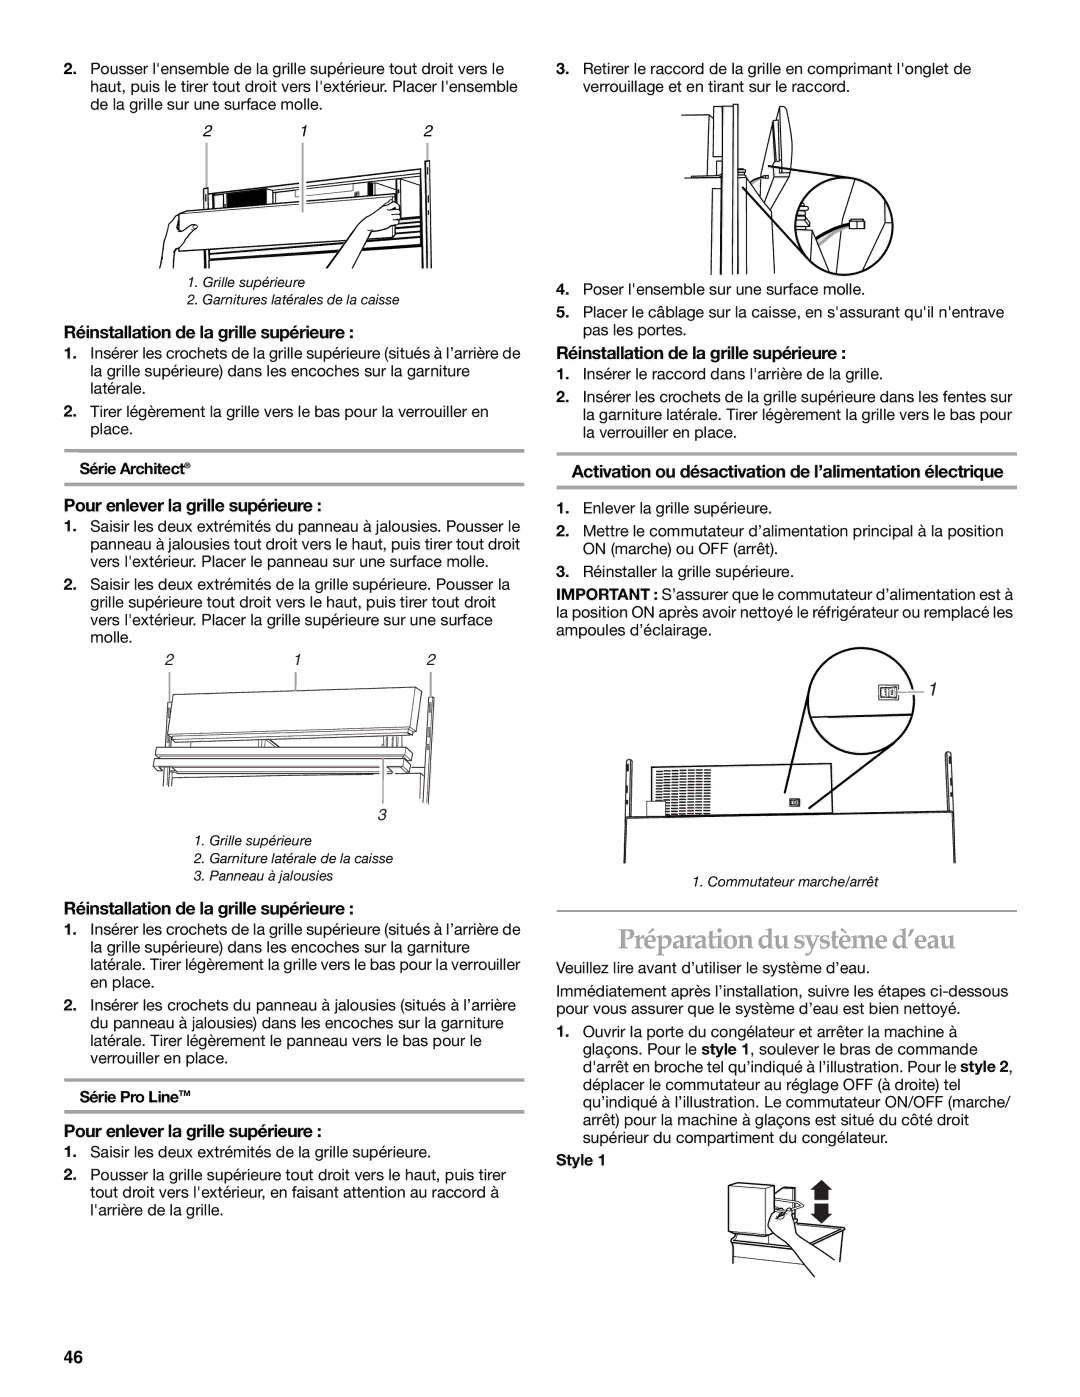 KitchenAid Side-by-Side Referigerator manual Préparation du système d’eau, Réinstallation de la grille supérieure 